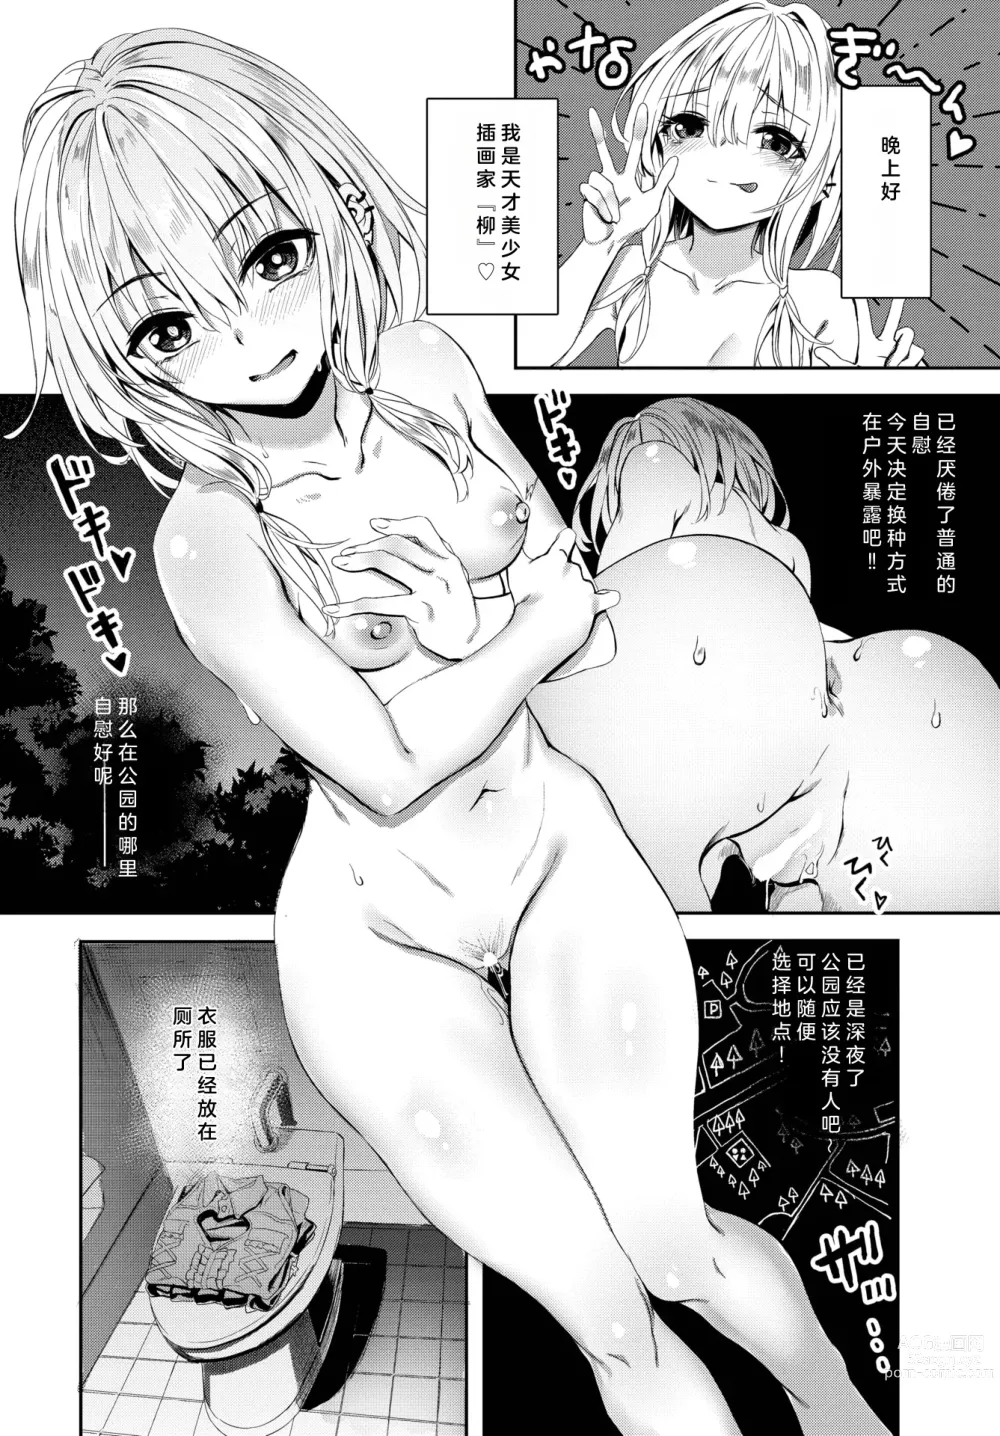 Page 6 of manga Jishou Kamieshi Yanagi no Enkou Ochinpo Report Manga Sono 1-3